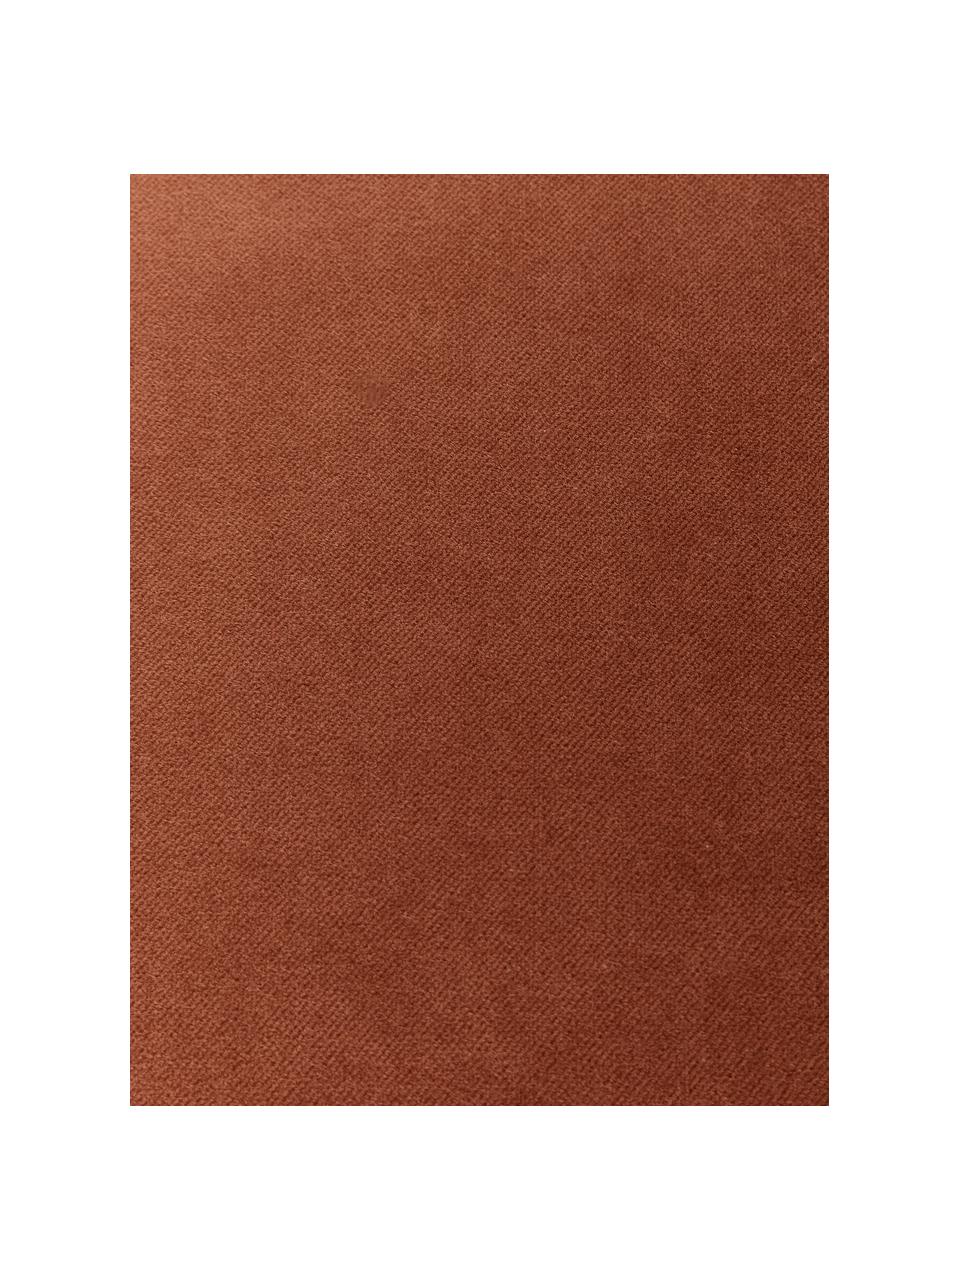 Einfarbige Samt-Kissenhülle Dana in Rostrot, 100% Baumwollsamt, Rostrot, B 40 x L 40 cm